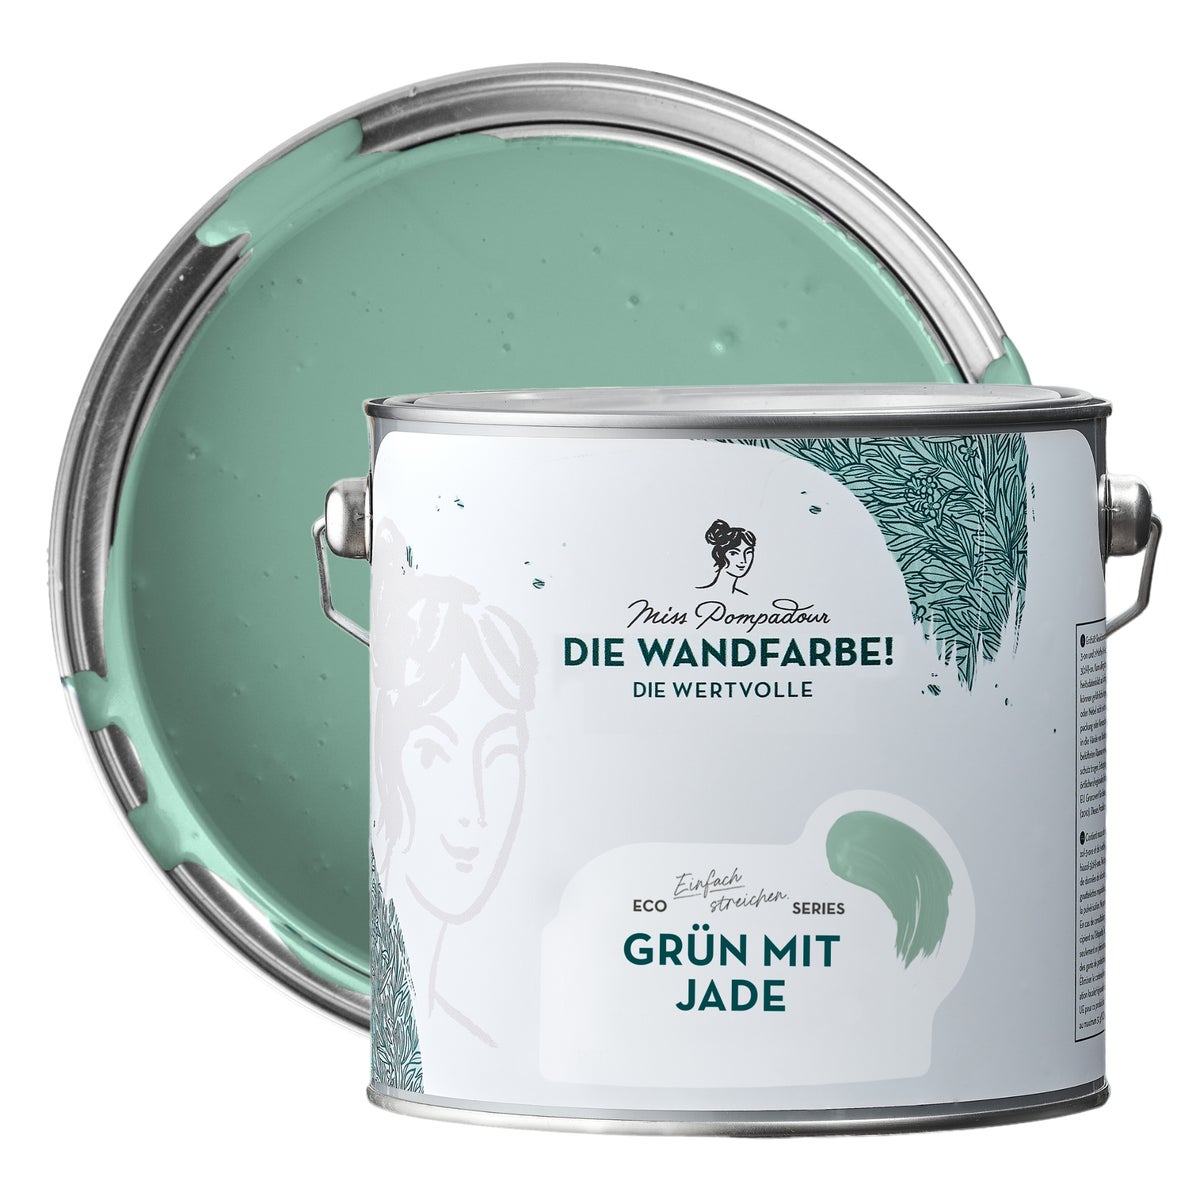 MissPompadour edelmatte Wandfarbe 2.5L Grün mit Jade - sehr hohe Deckkraft - geruchsneutrale, spritzfreie Farbe - atmungsaktive, wasserbasierte Innenfarbe/Deckenfarbe - Die Wertvolle